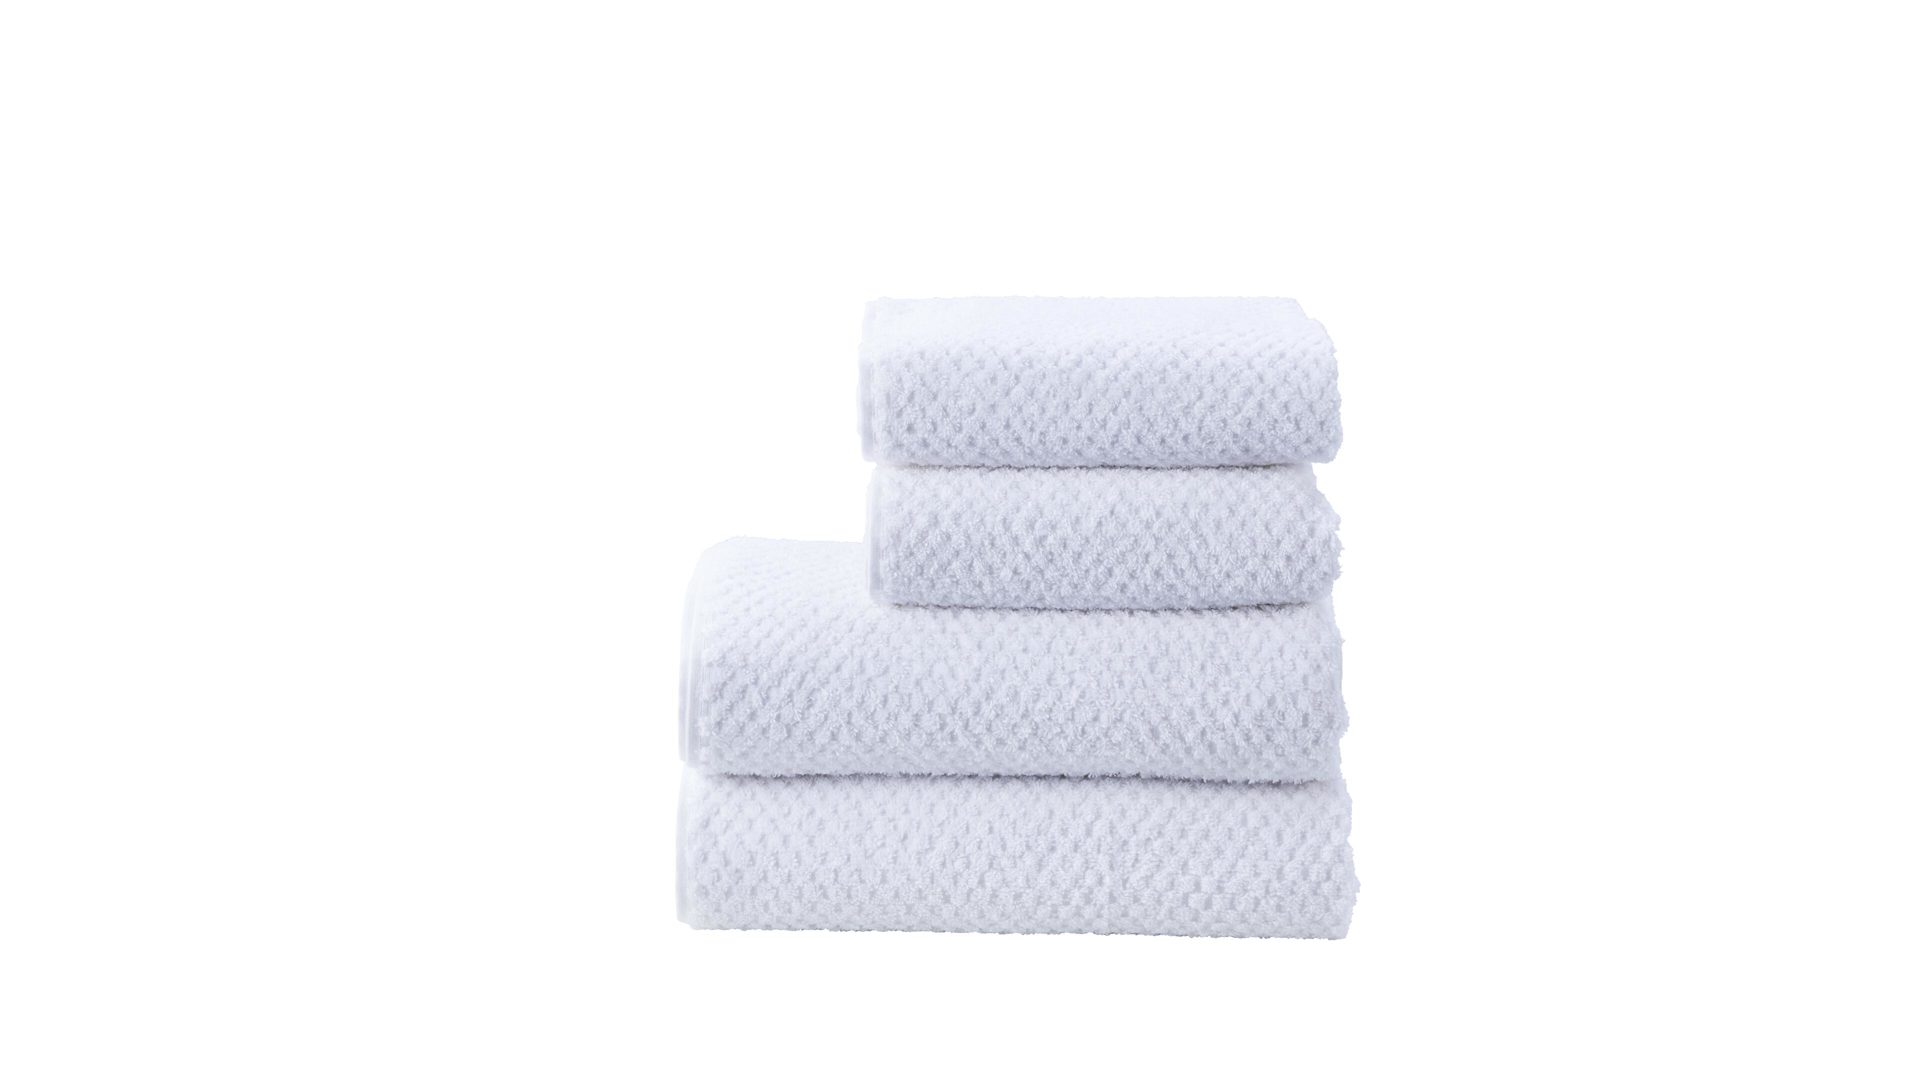 Handtuch-Set Done.® be different aus Stoff in Weiß DONE.® Handtuch-Set Provence Honeycomb weiße Baumwolle – vierteilig